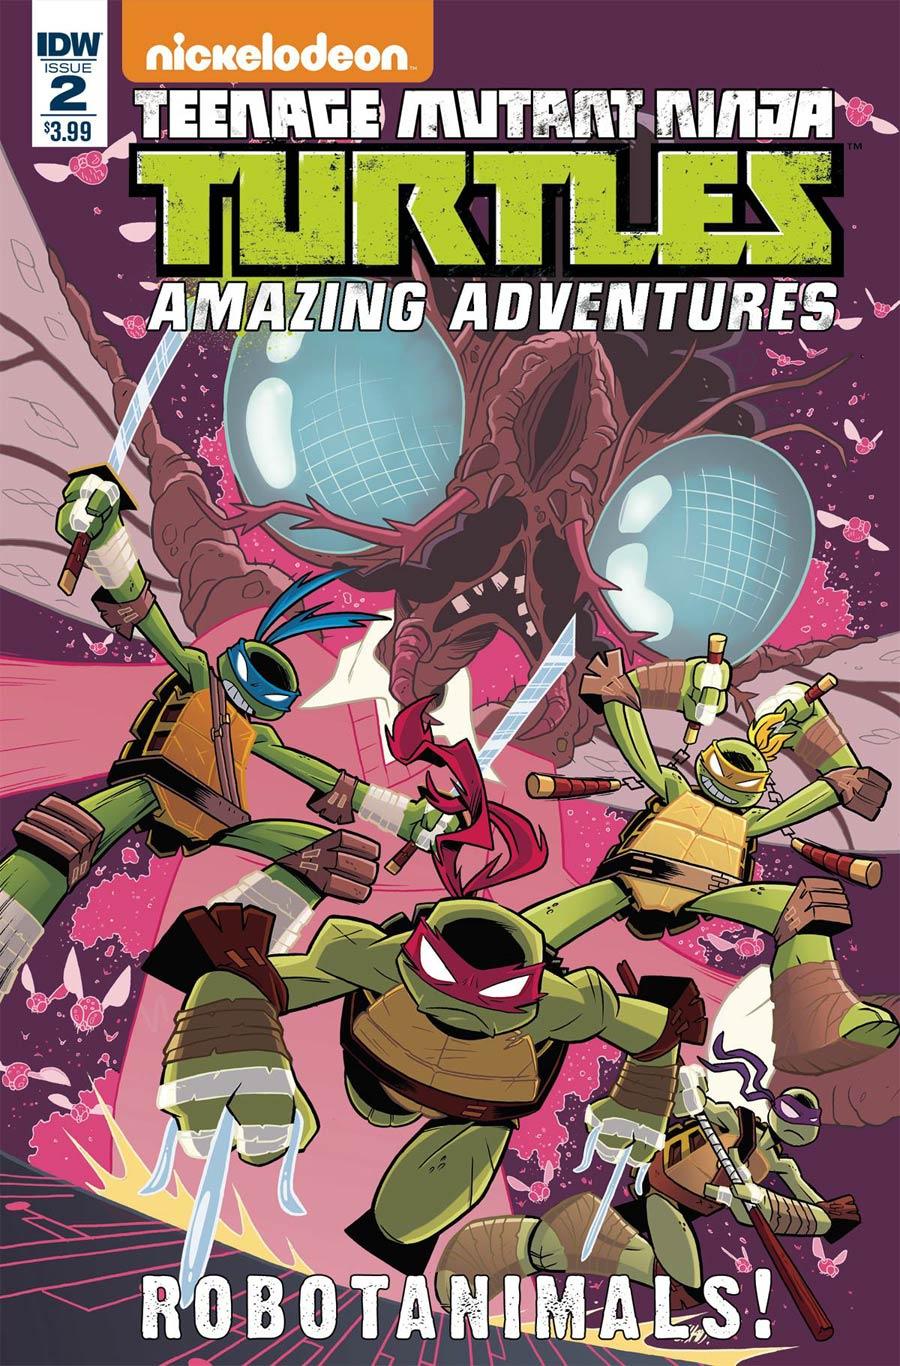 Teenage Mutant Ninja Turtles Amazing Adventures Robotanimals Vol. 1 #2